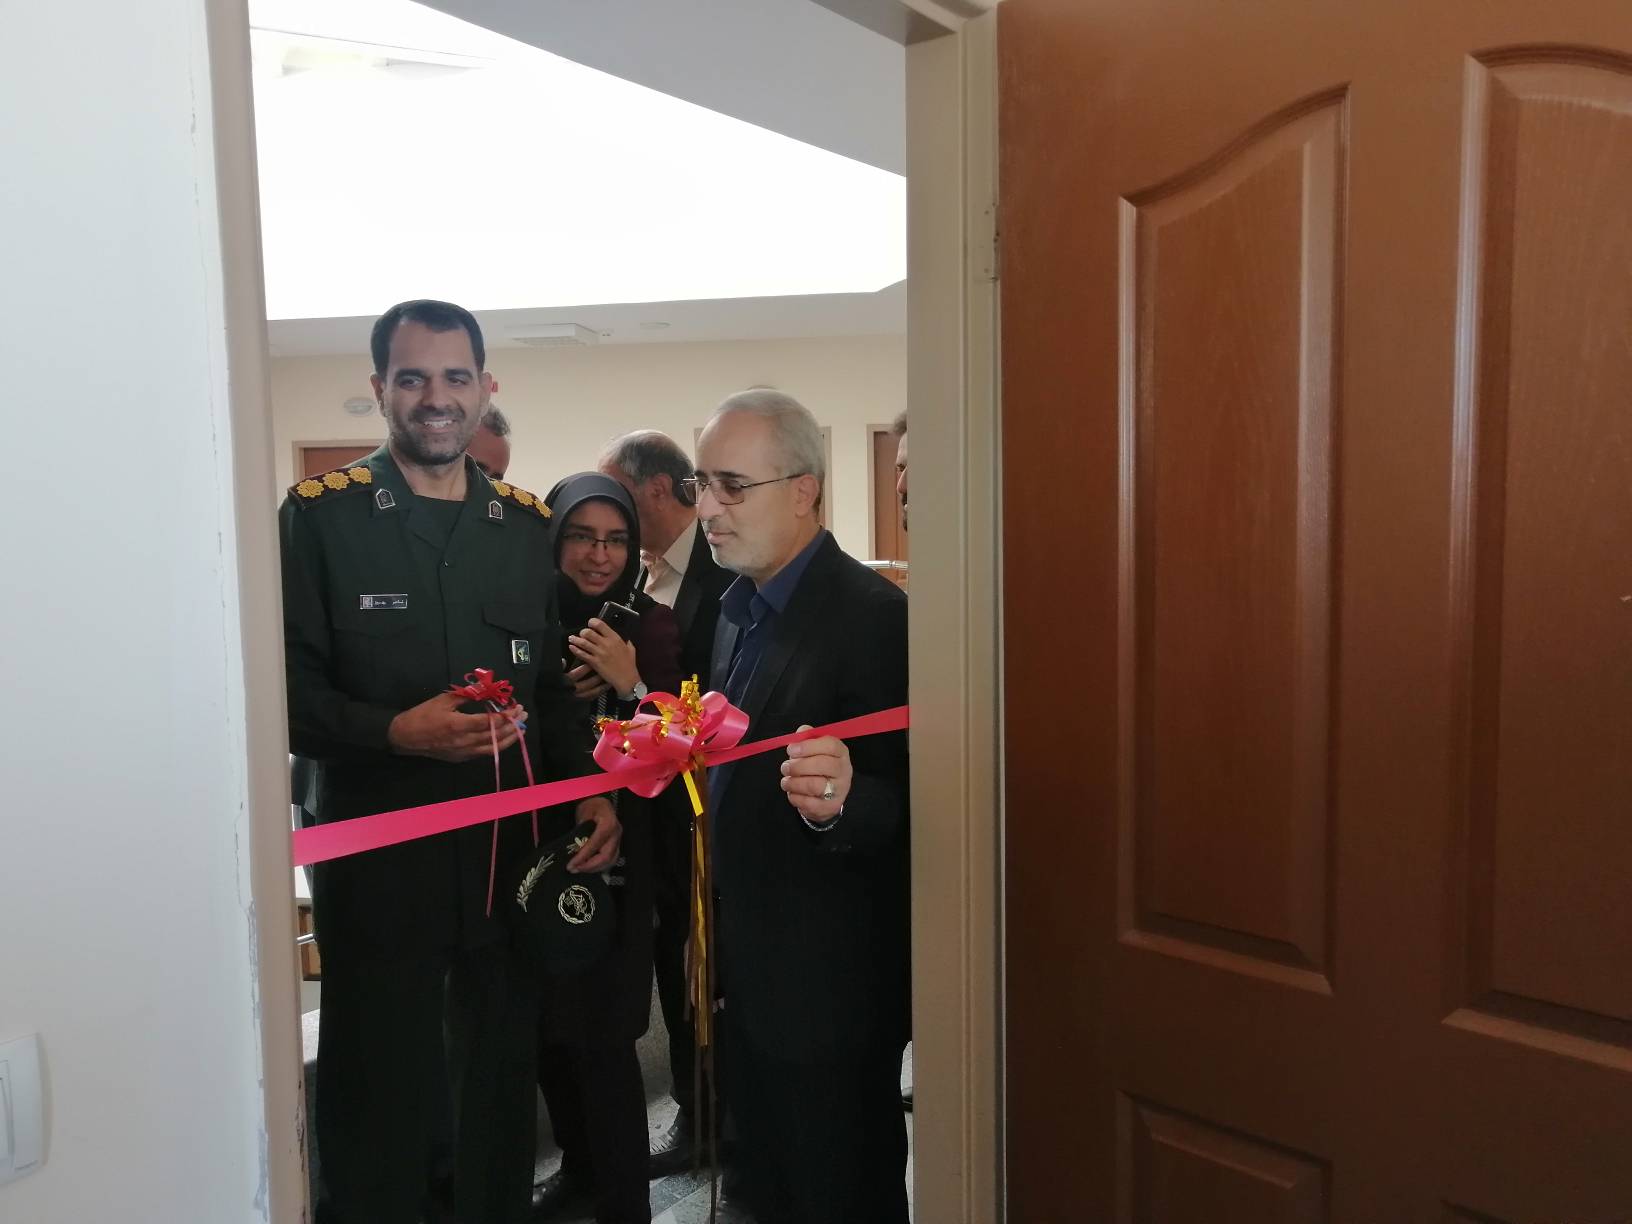 افتتاح اولین خانه صنعت یار به همت بسیج مهندسین صنعت کرمان در شهرک صنعتی خضراء